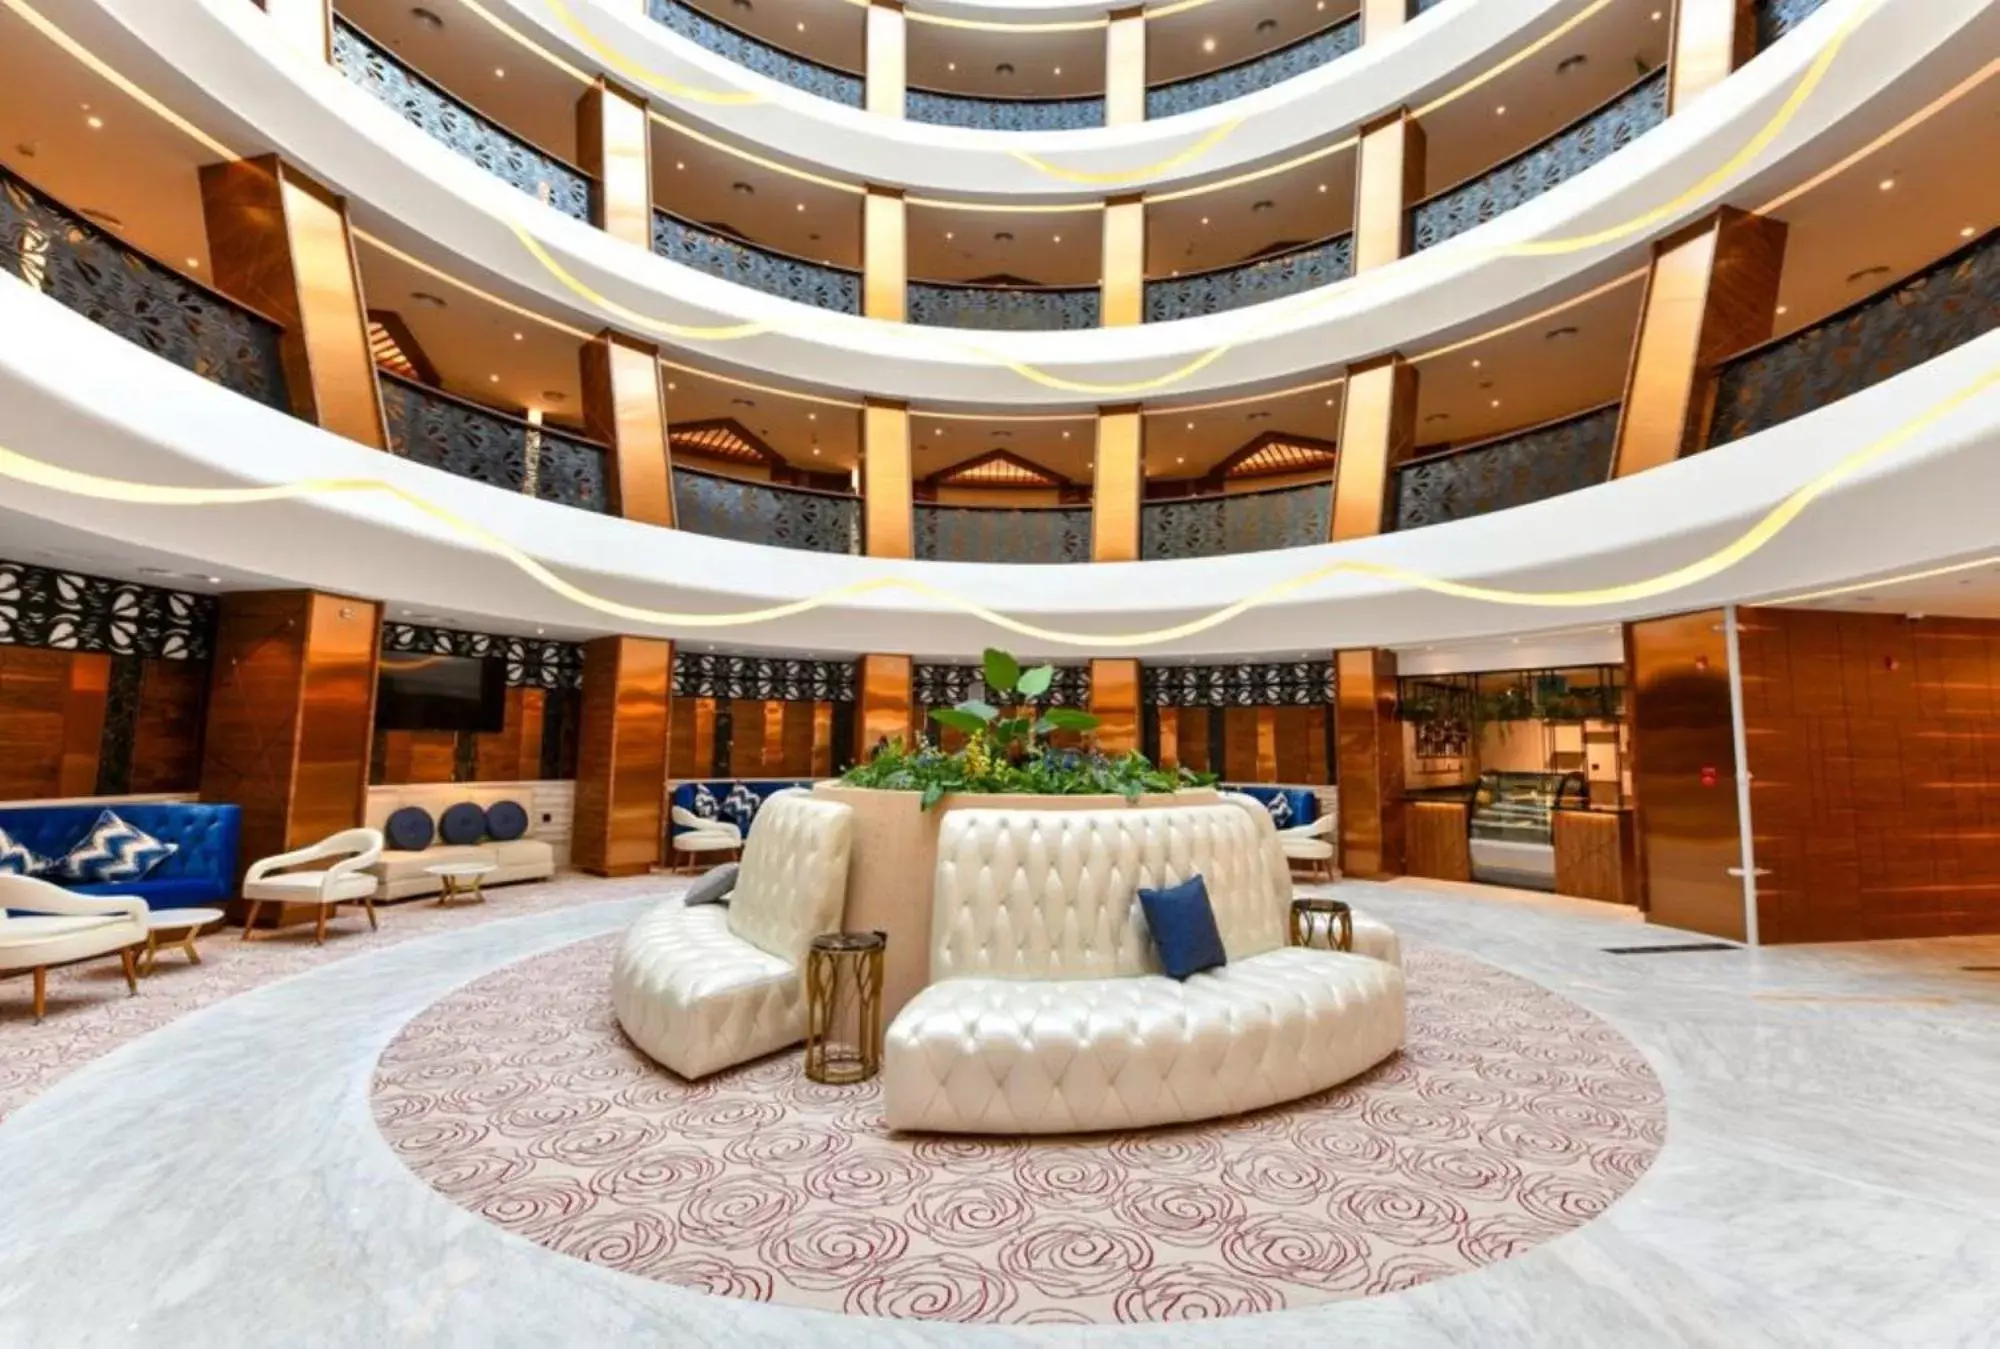 Lobby or reception in Cielo Hotel Lusail Qatar